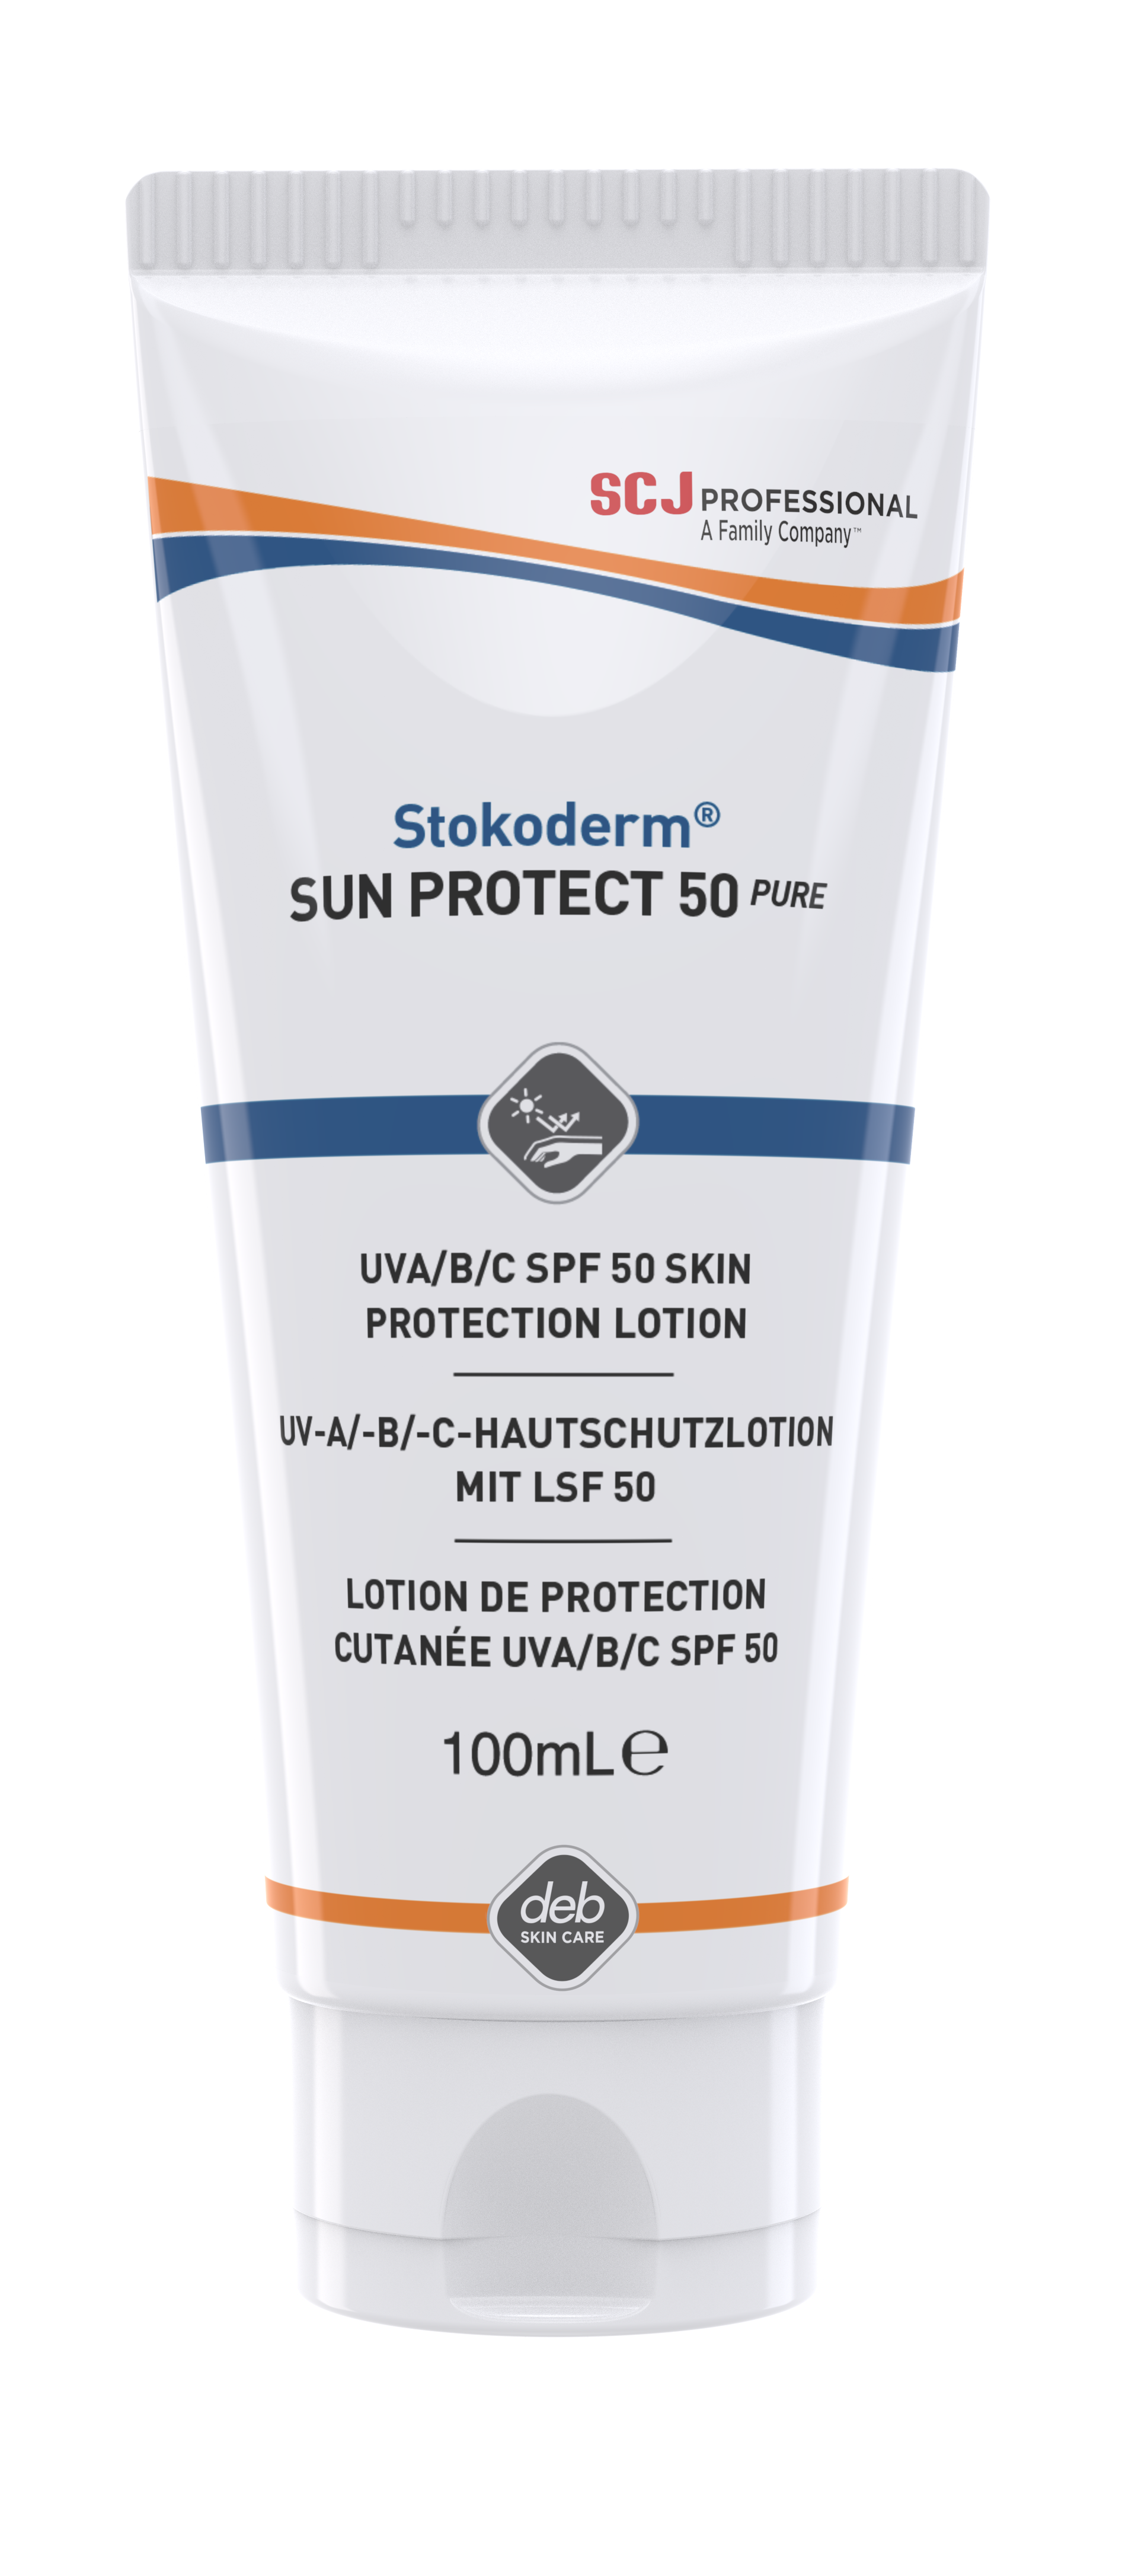 Huidbeschermer DebStoko Stokoderm® Sun Protect 50 PURE 100ml